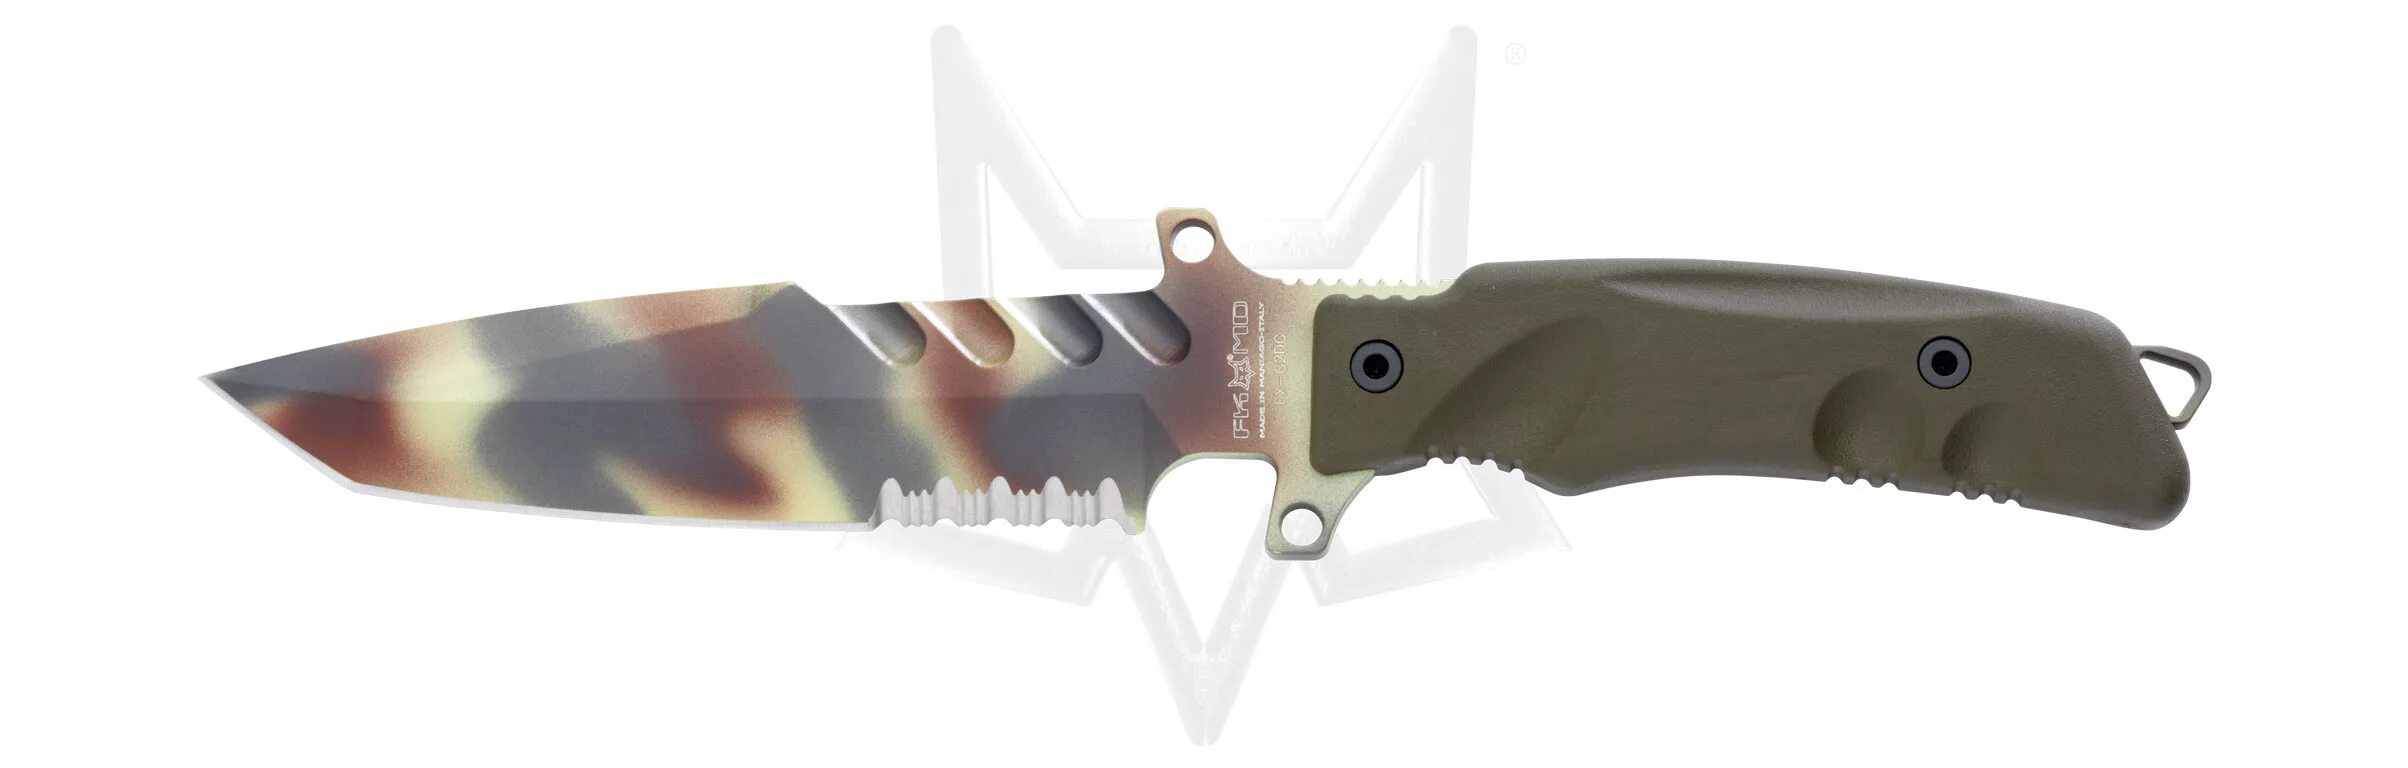 Fox Knives Predator 1. Найс Фокс нож. Нож складной 0450 ecnoongming. Нож складной Bestex Predator. Fox predator